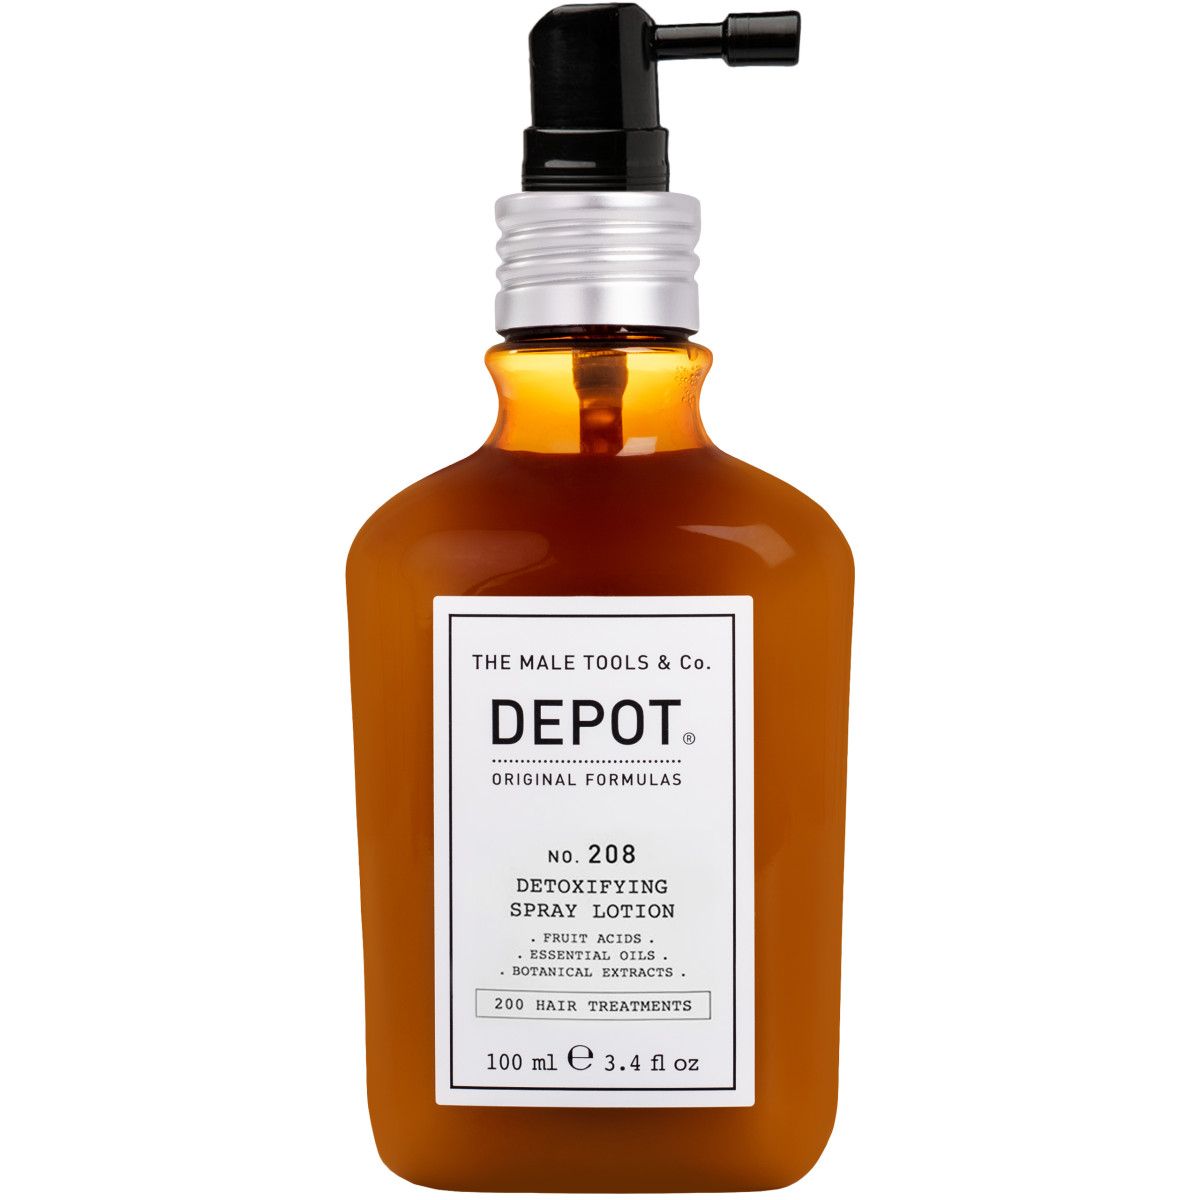 Depot NO.208 Detoxifying Spray - Lotion detoksykujący lotion do skóry głowy, 100ml